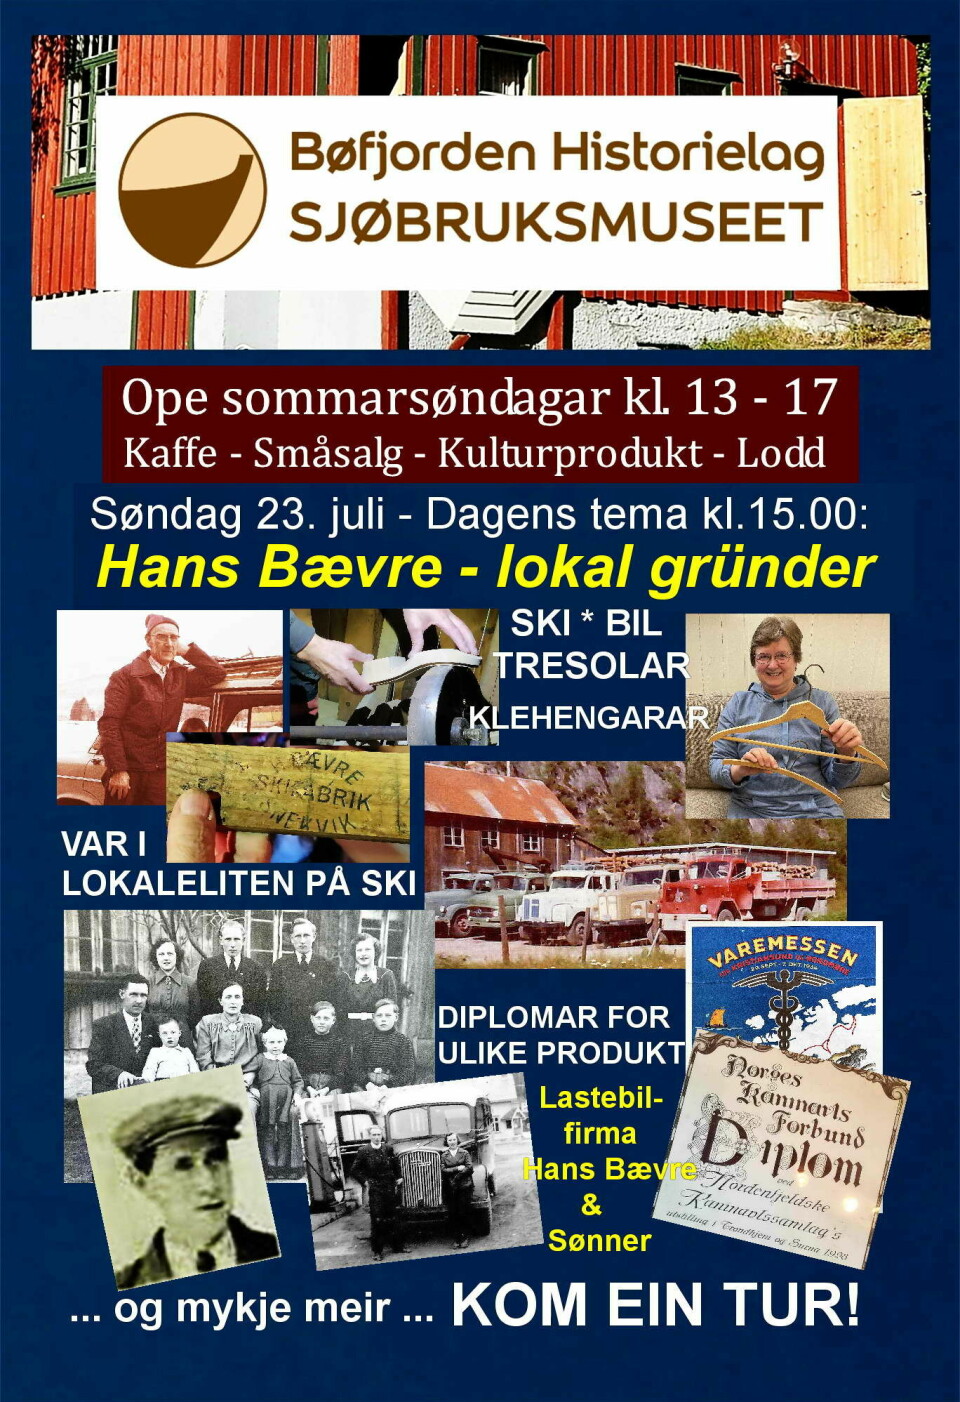 Reklameplakat fra Bøfjorden historielag